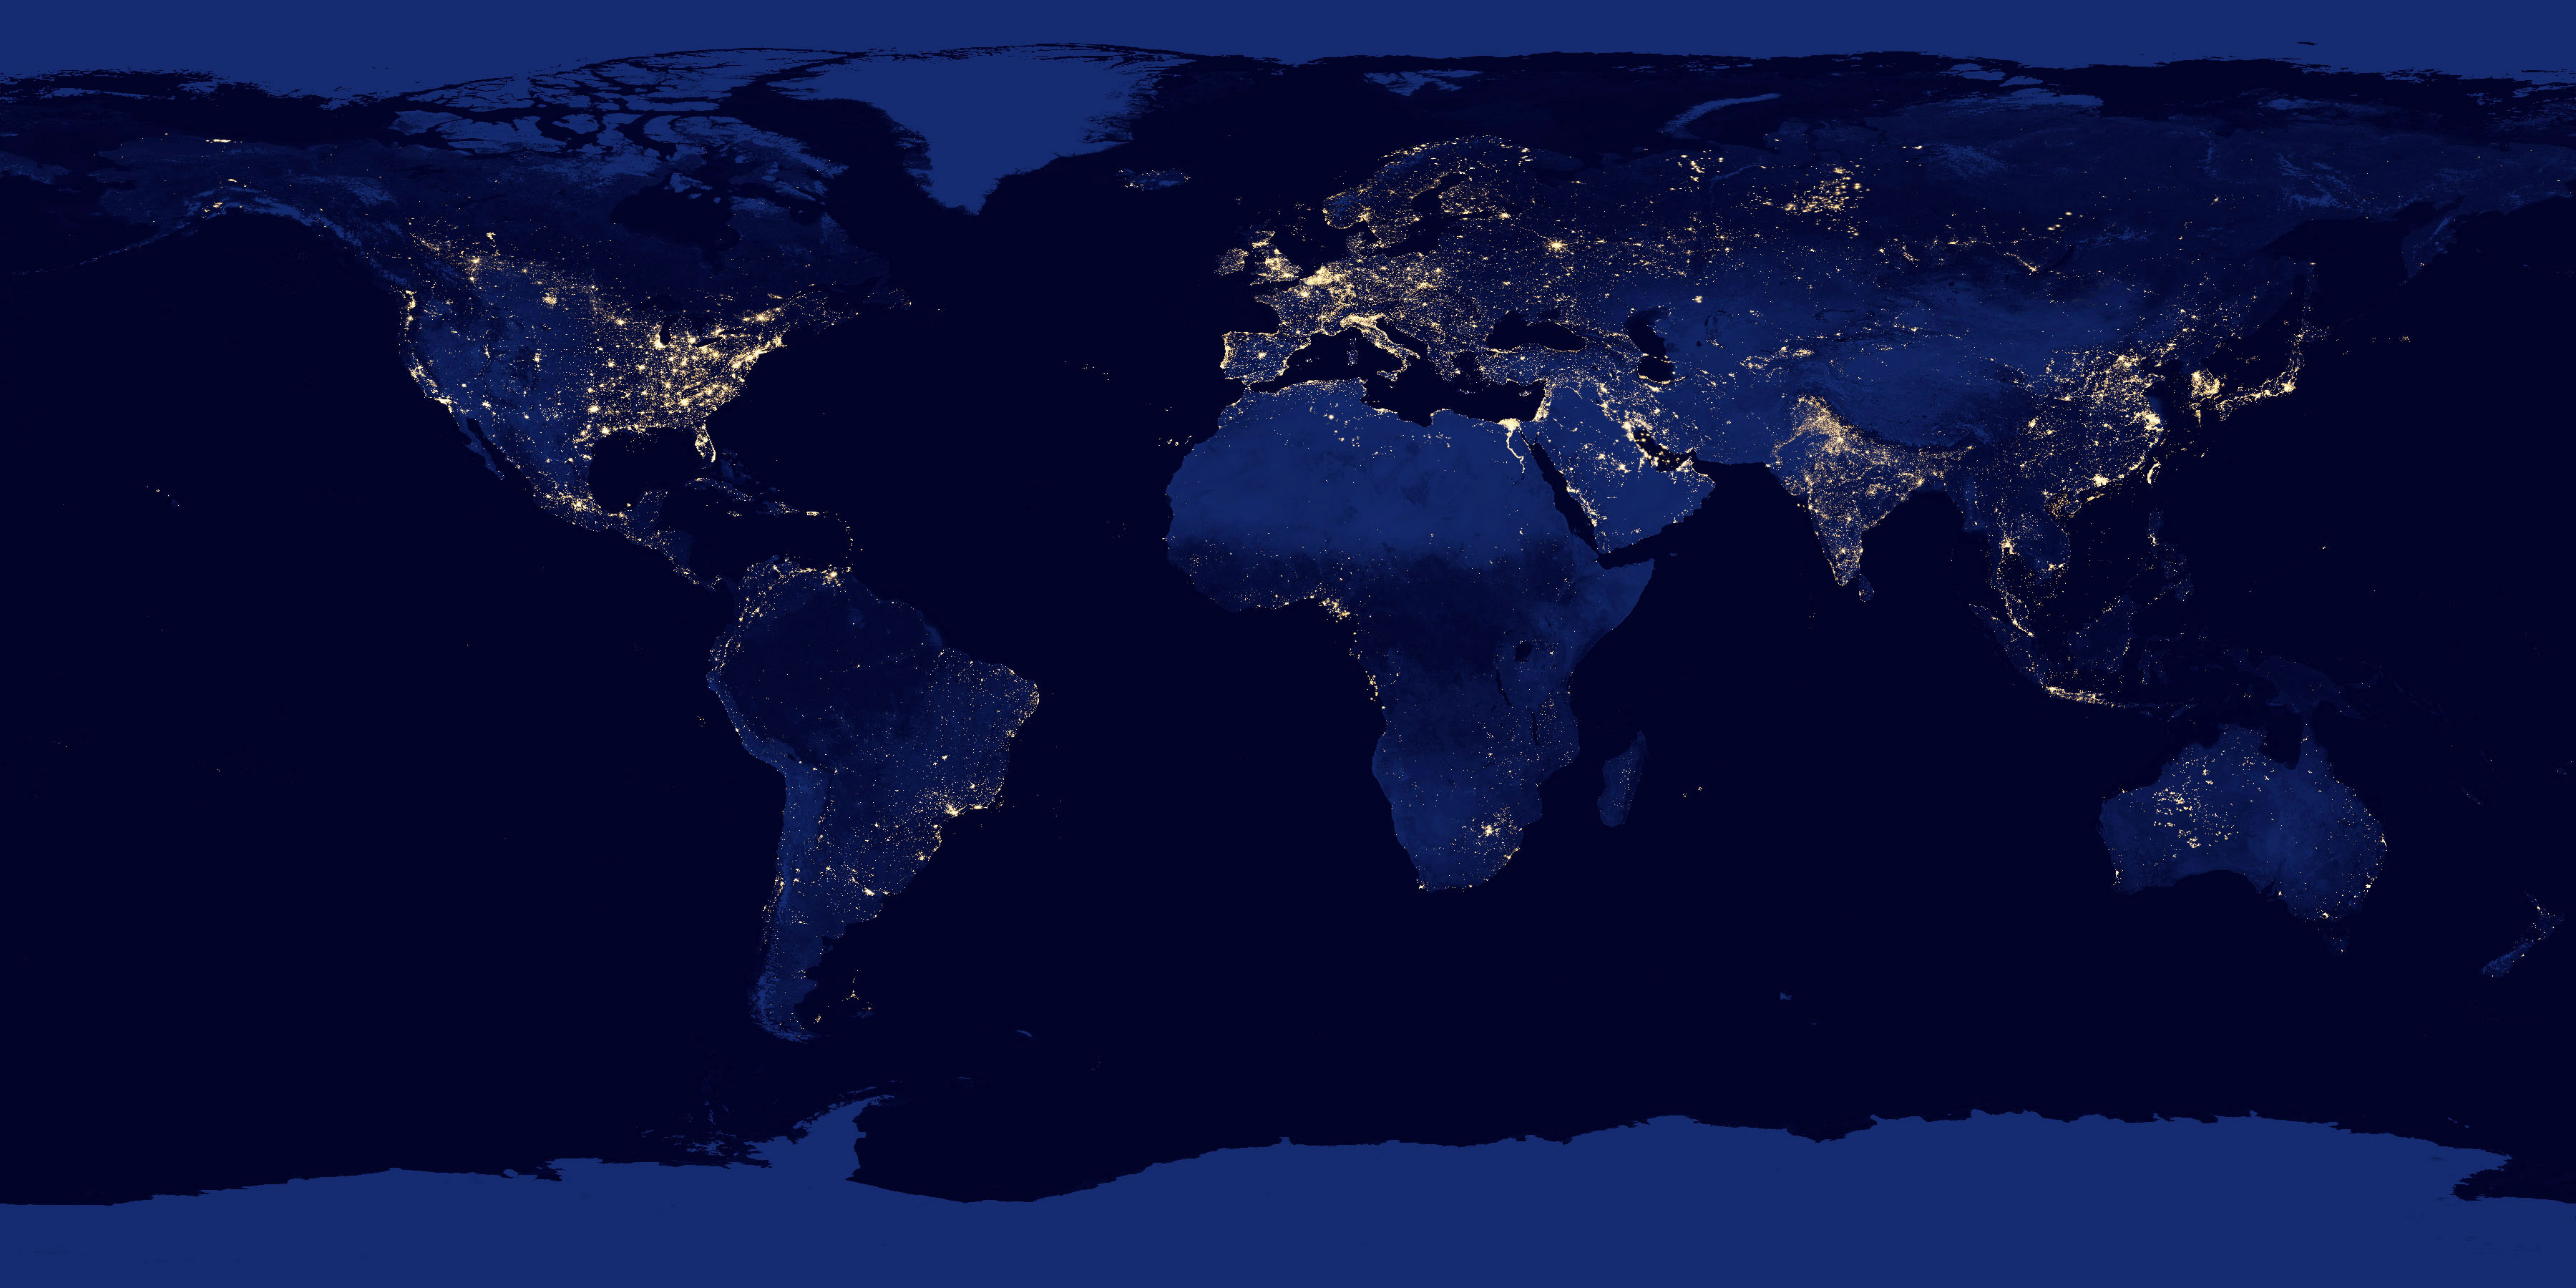 Night Earth imagenes aereas nocturnas